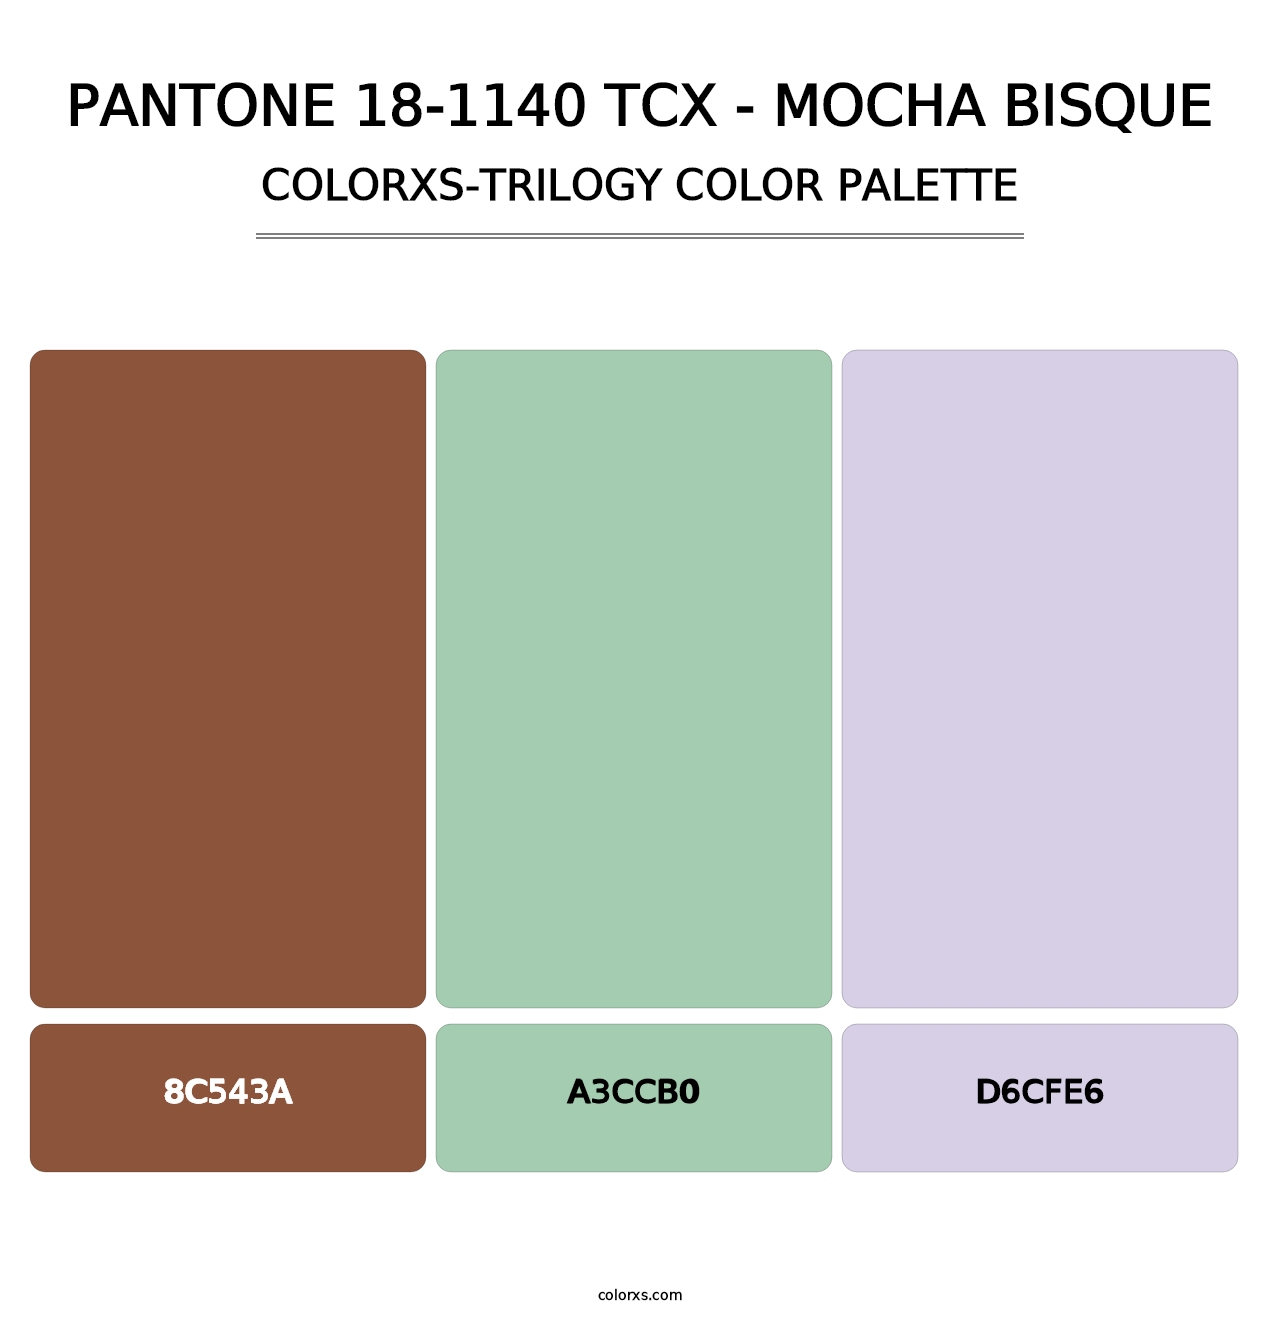 PANTONE 18-1140 TCX - Mocha Bisque - Colorxs Trilogy Palette